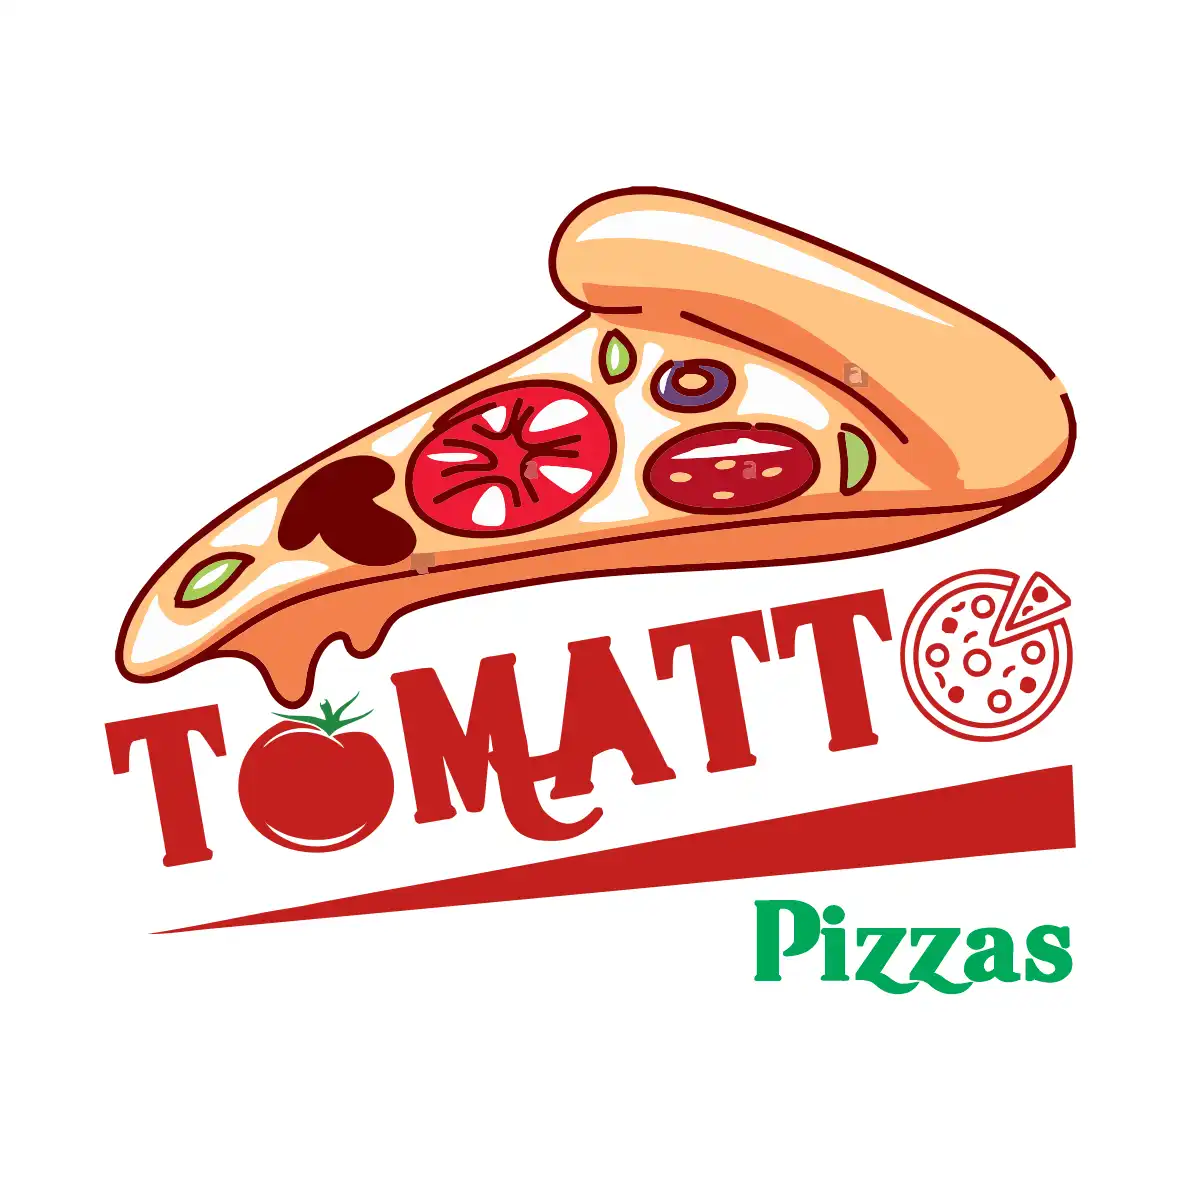 Logotipo para Pizzas
